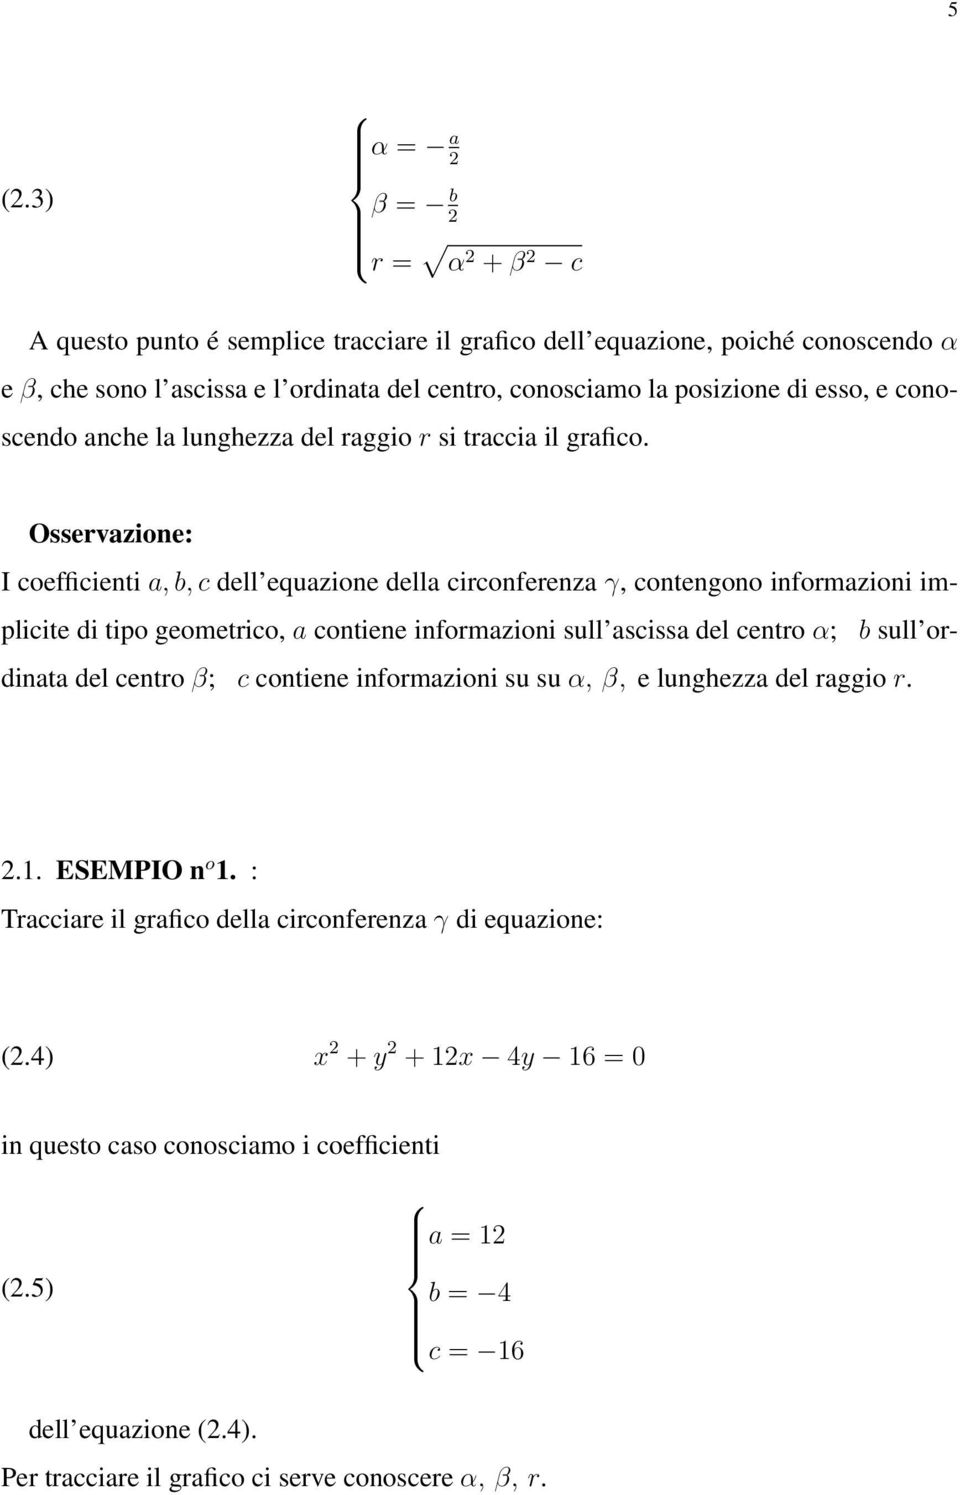 Osservazione: I coefficienti a, b, c dell equazione della circonferenza γ, contengono informazioni implicite di tipo geometrico, a contiene informazioni sull ascissa del centro α; b sull